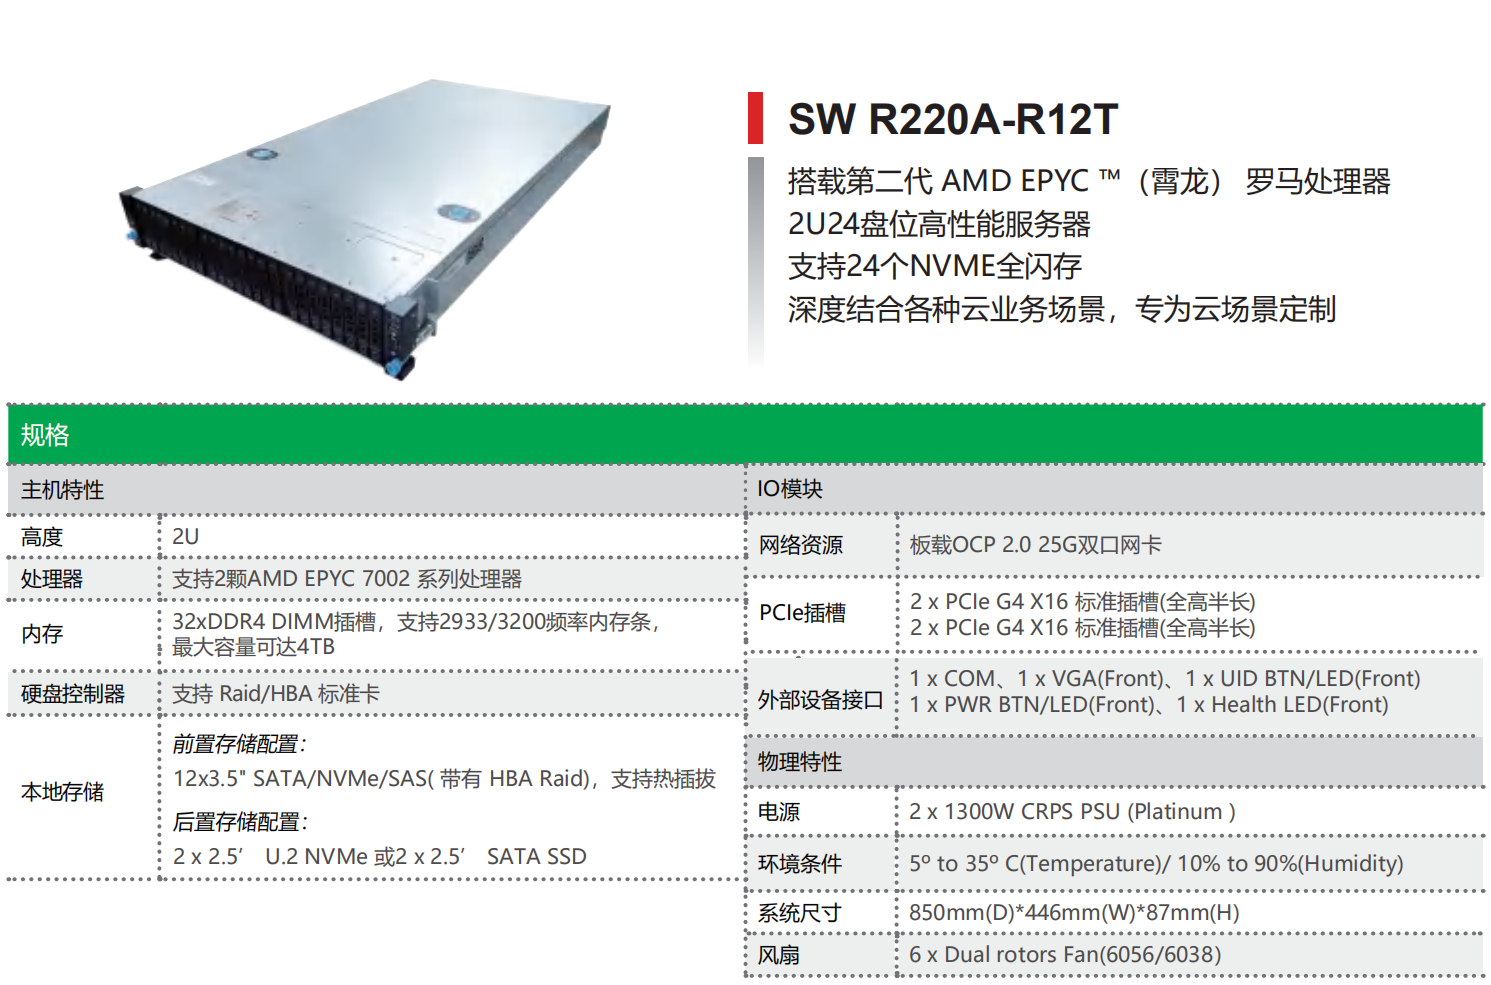 AMD 平台服务器—SW R220A-R12T